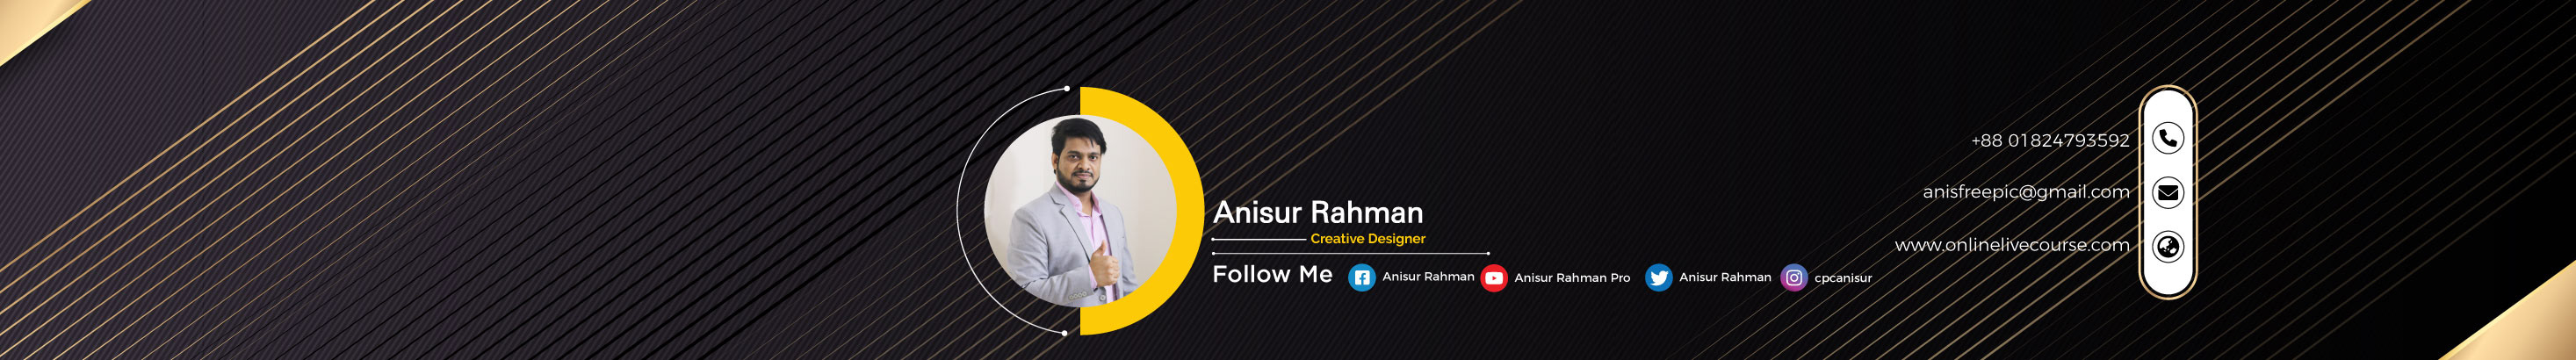 Banner de perfil de Anisur Rahman